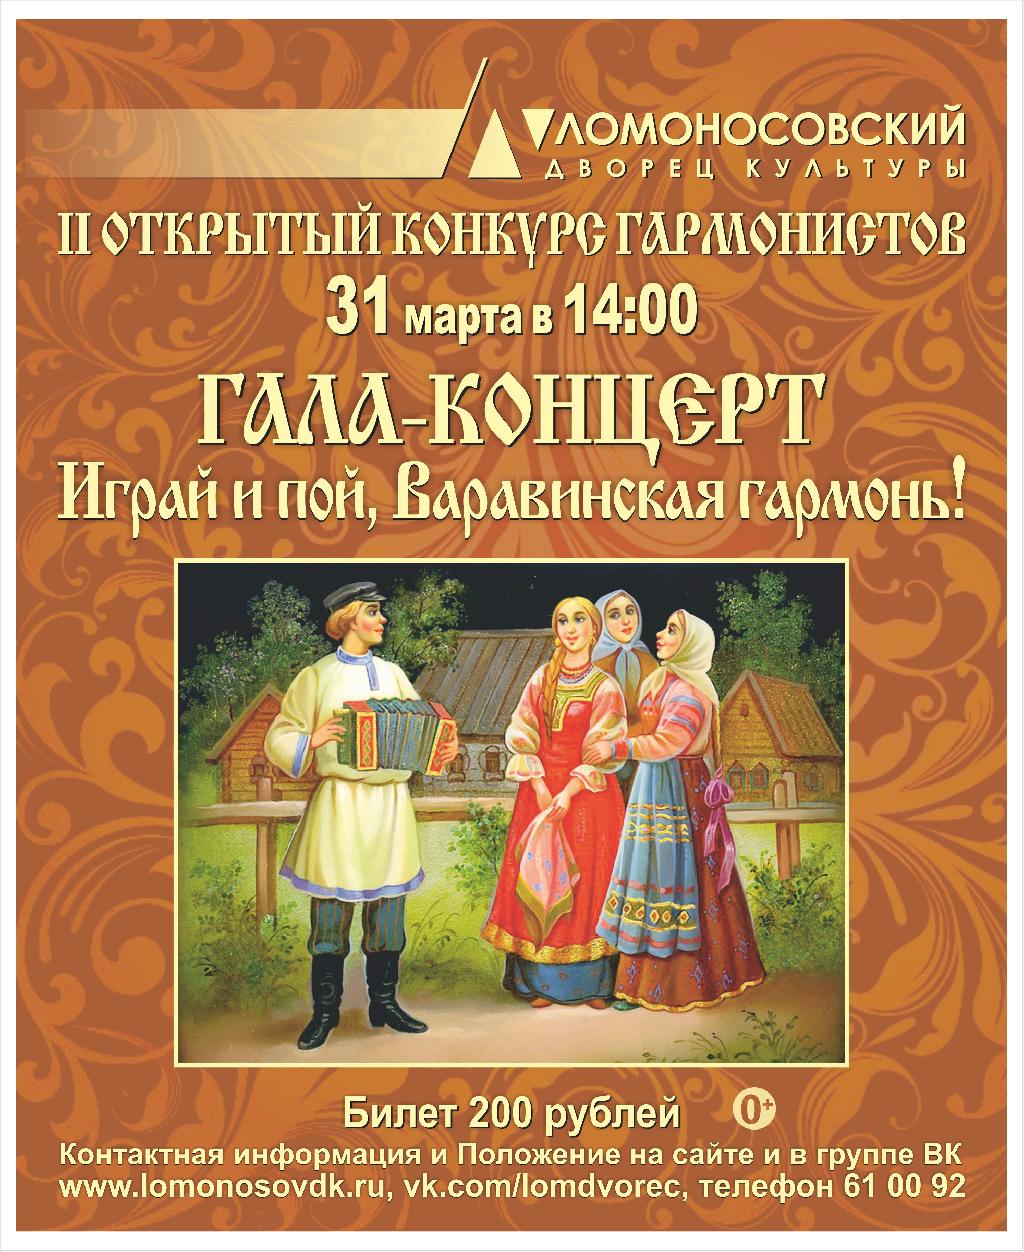 Ломоносовский Дворец культуры приглашает принять участие во втором открытом конкурсе «Играй и пой, Варавинская гармонь!»